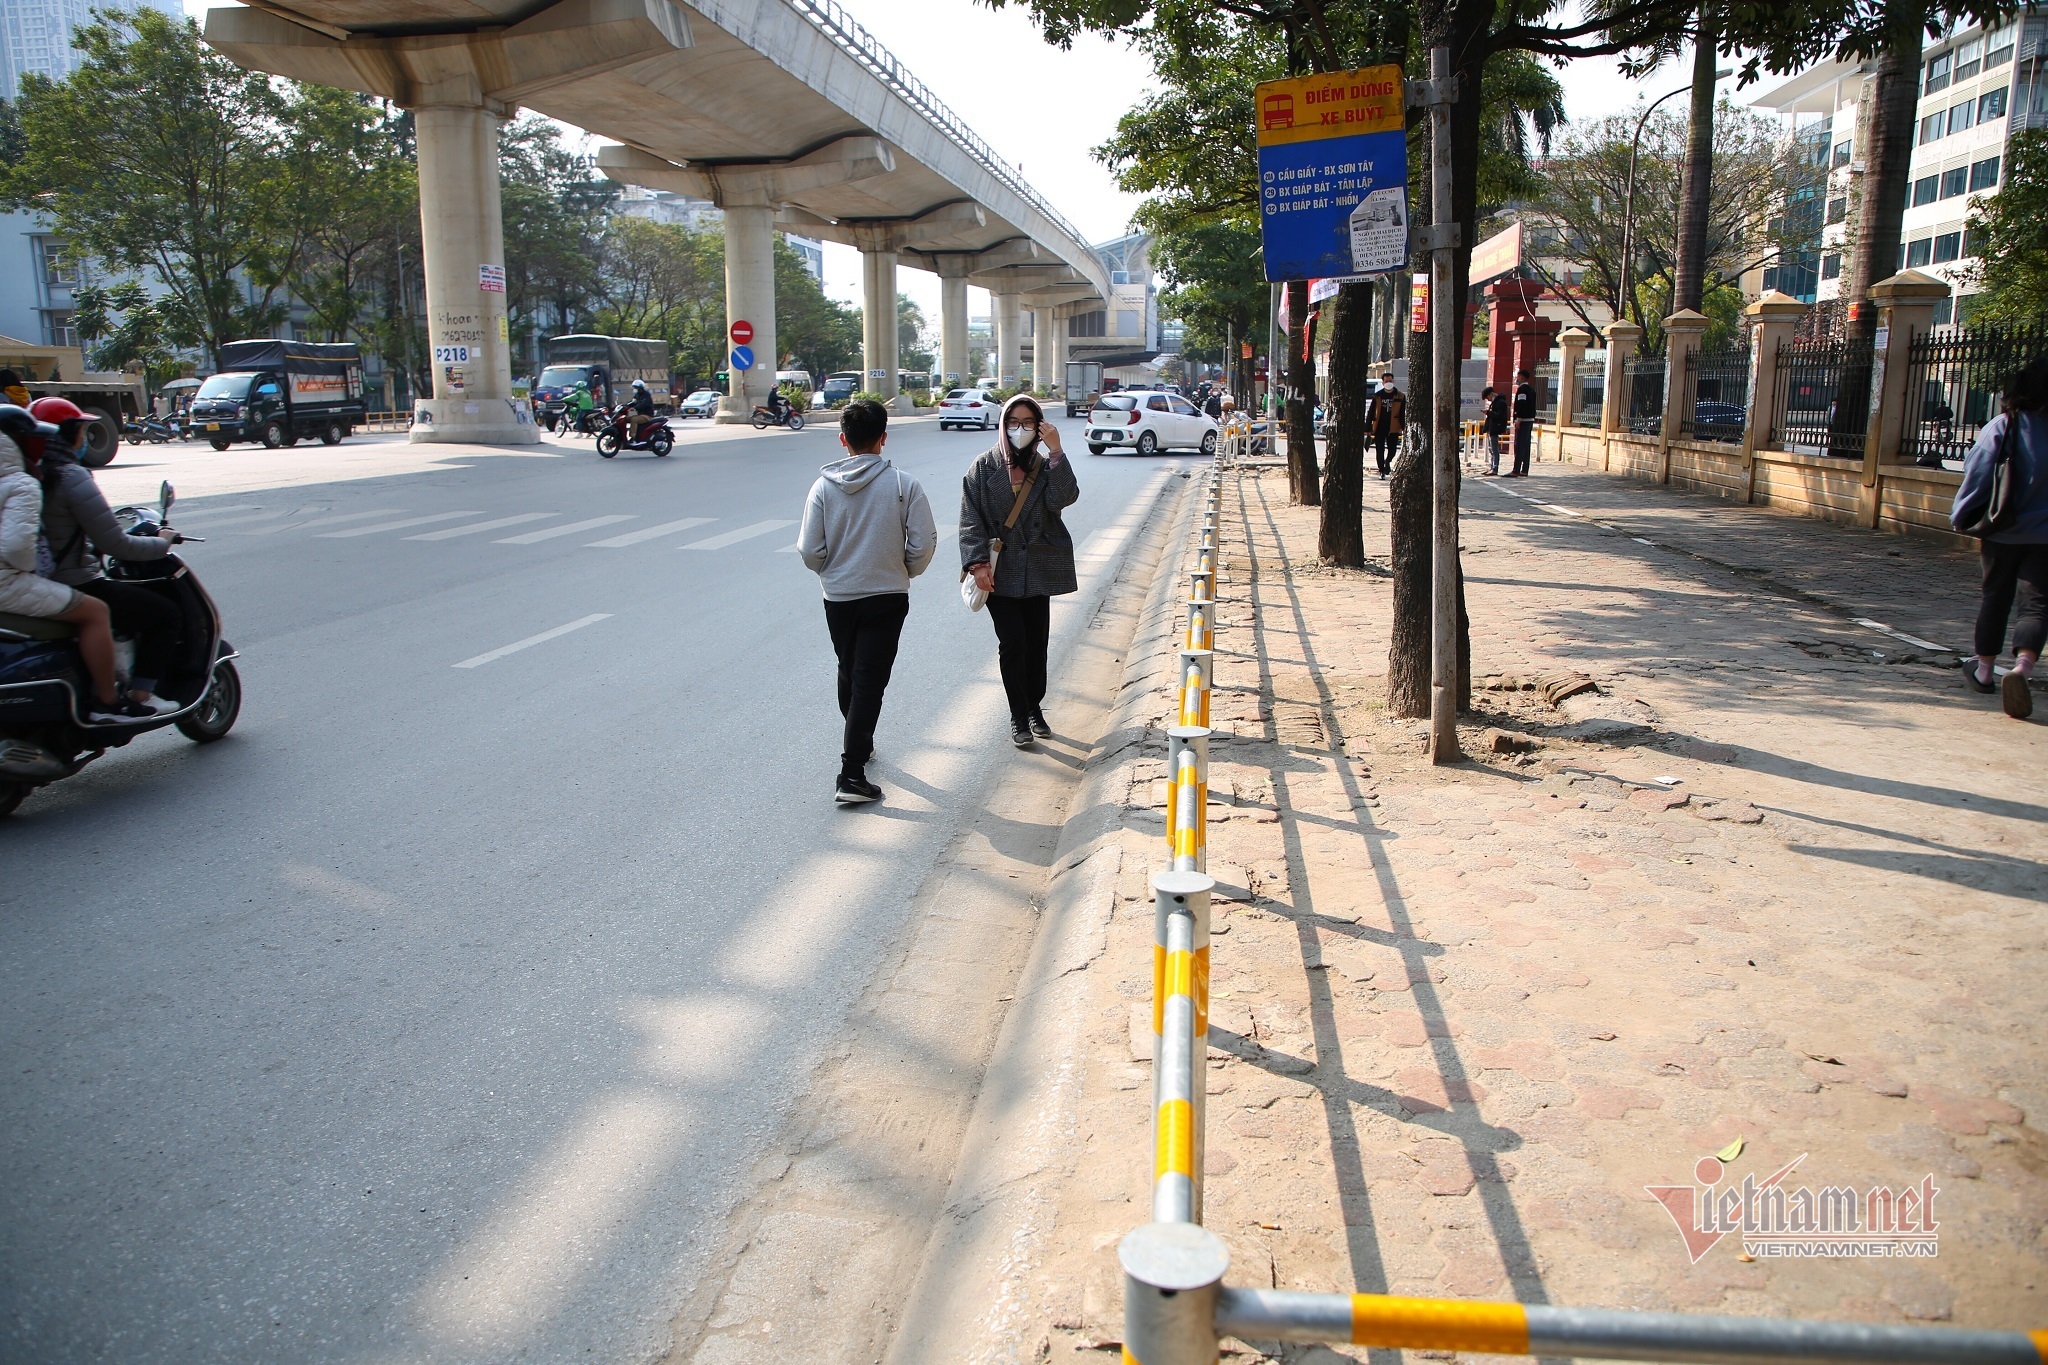 Hà Nội: Gỡ đoạn rào vỉa hè 'chắn' người đi bộ qua đường